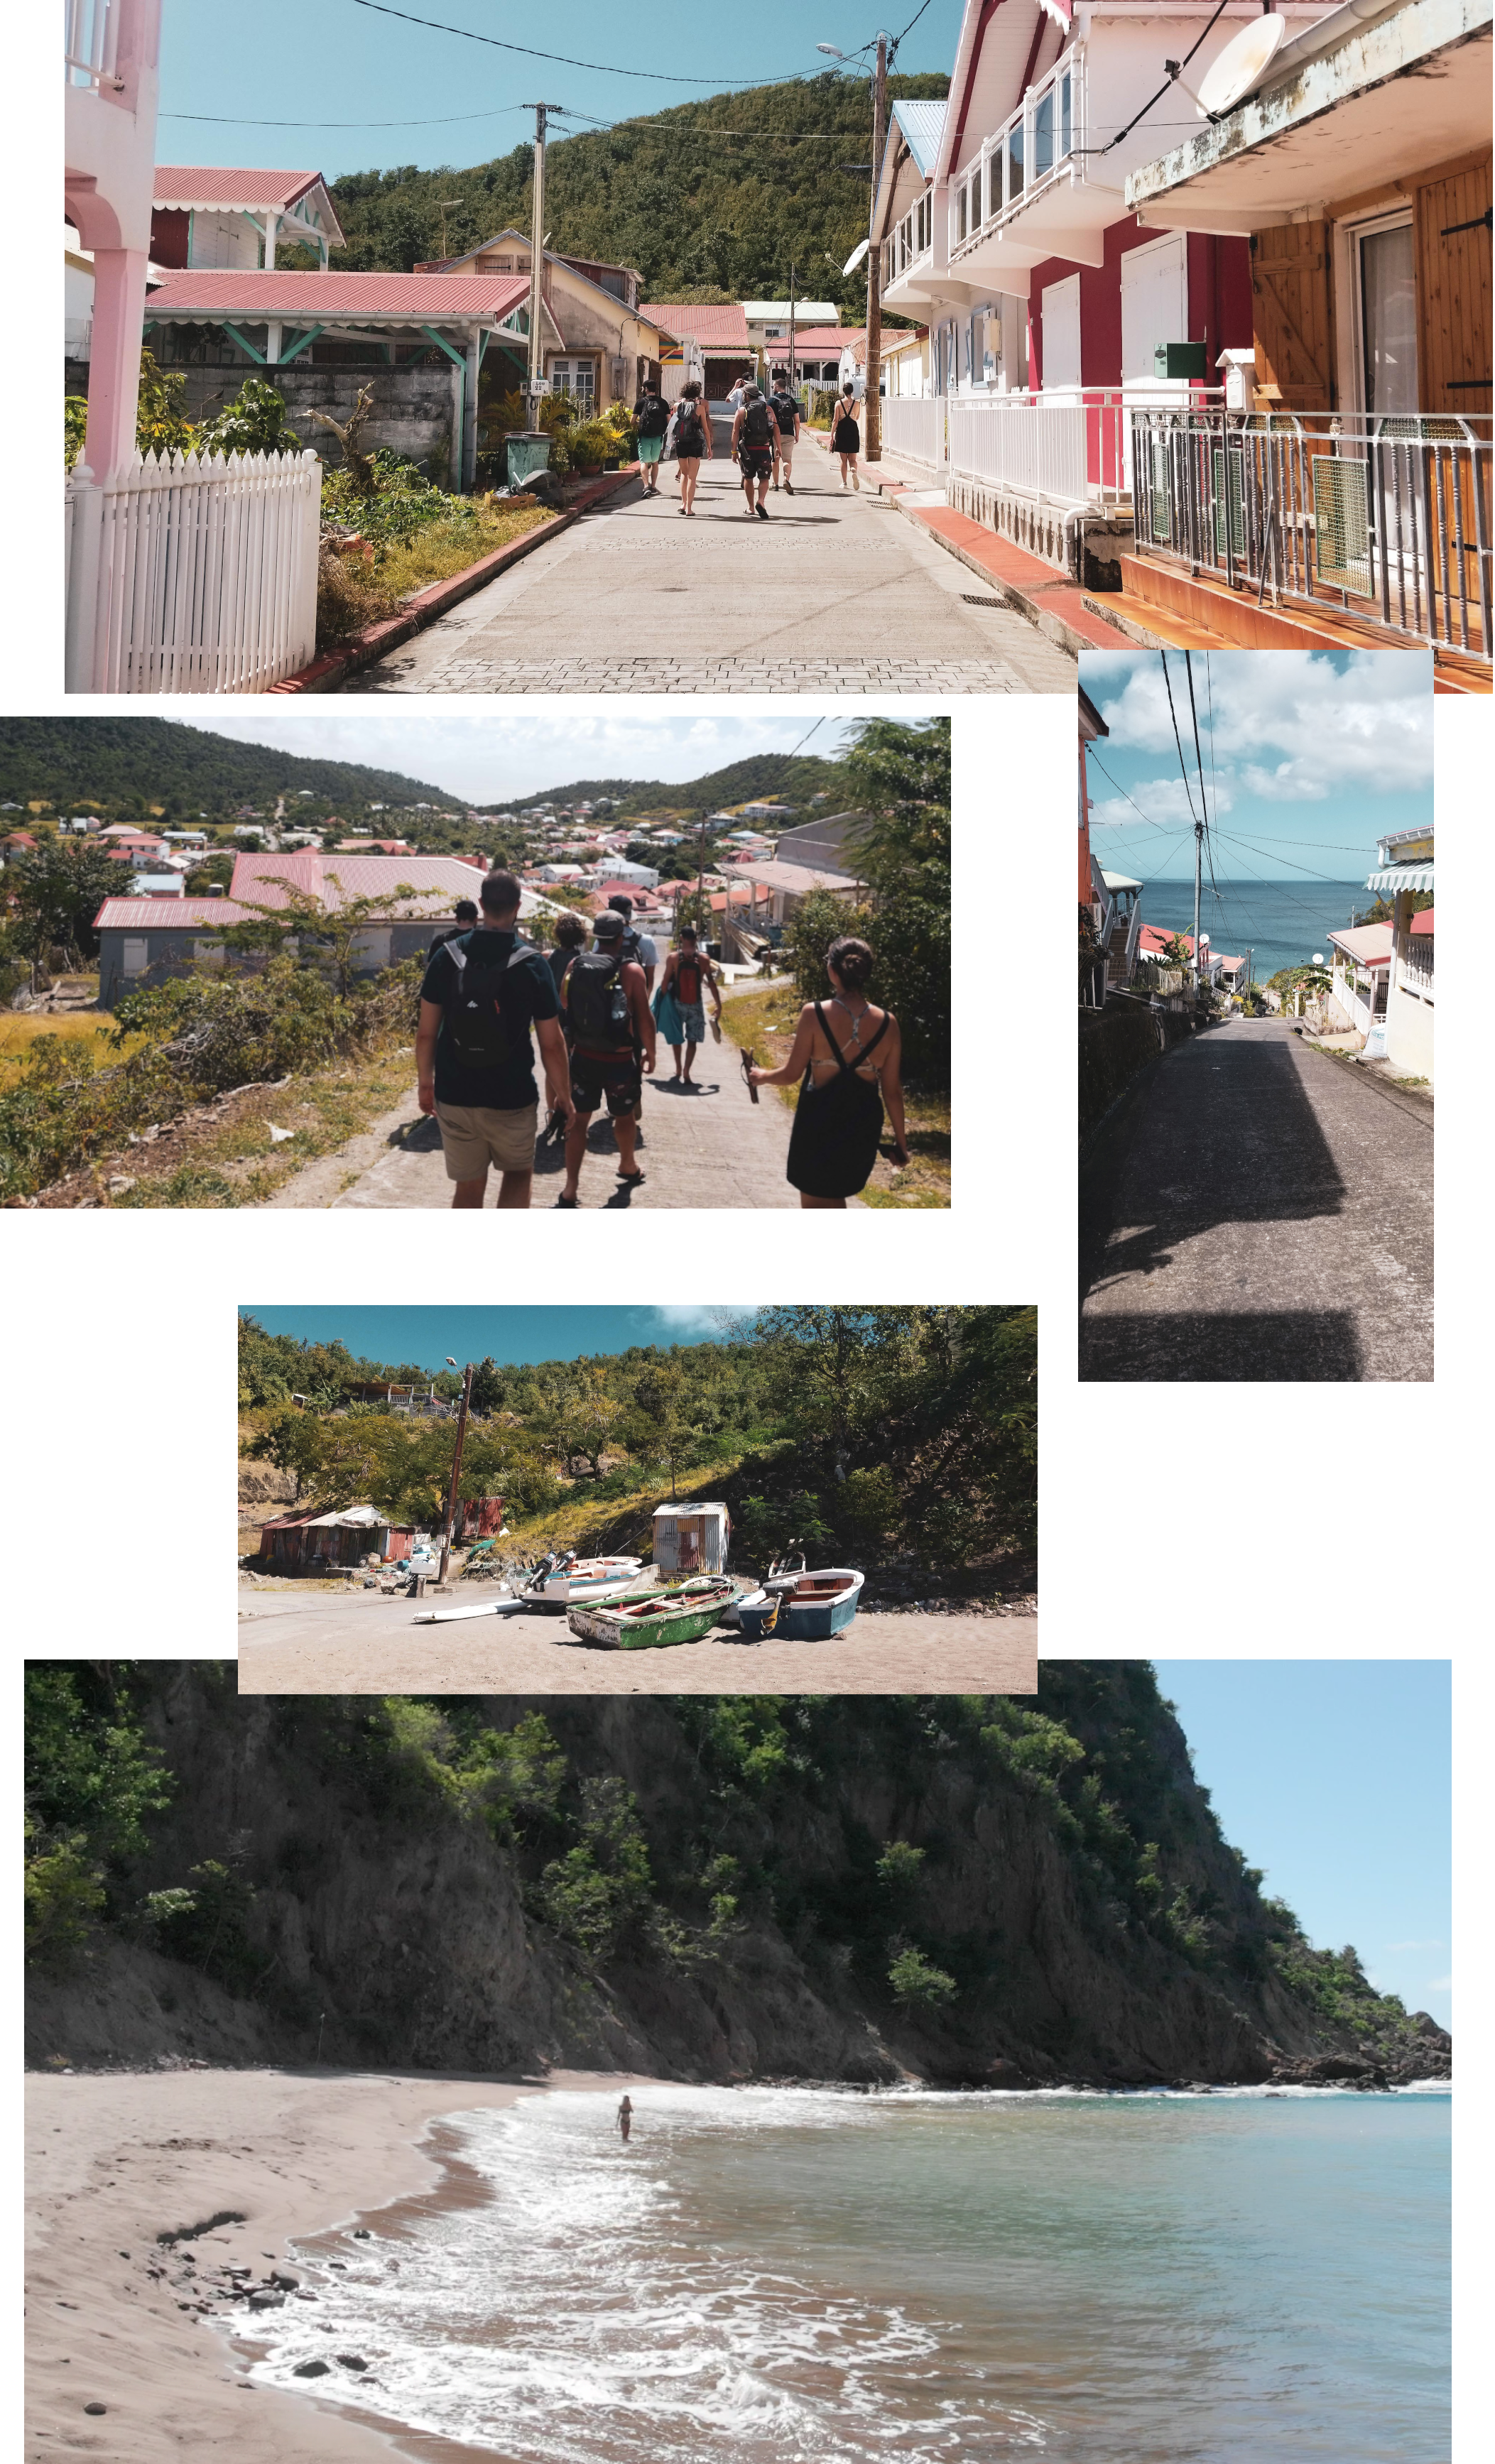 Visite de l'île des Saintes en Guadeloupe, par Côté Hublot